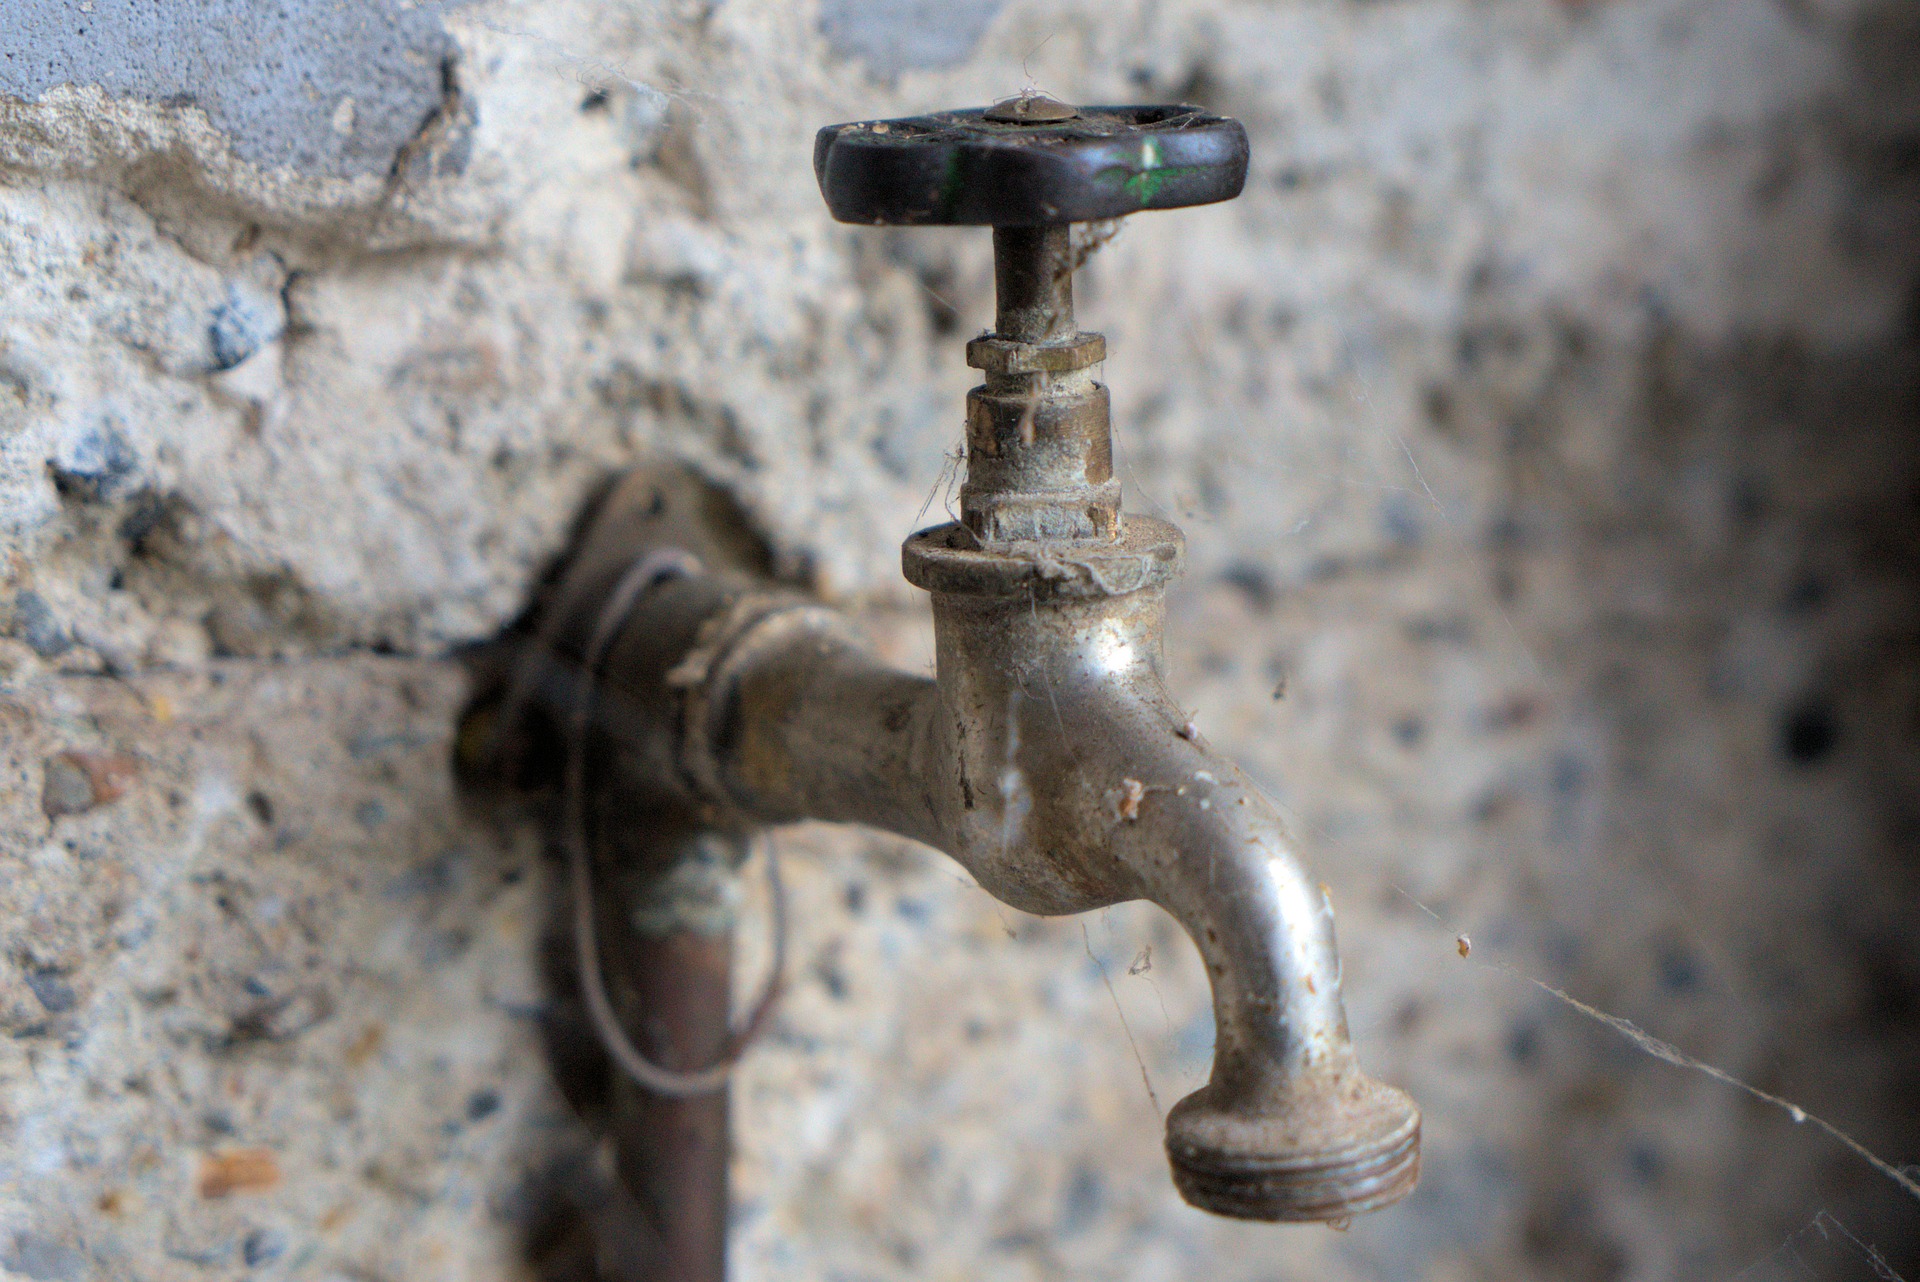 Service de recherche de fuites d'eau professionnel - Garantie de satisfaction